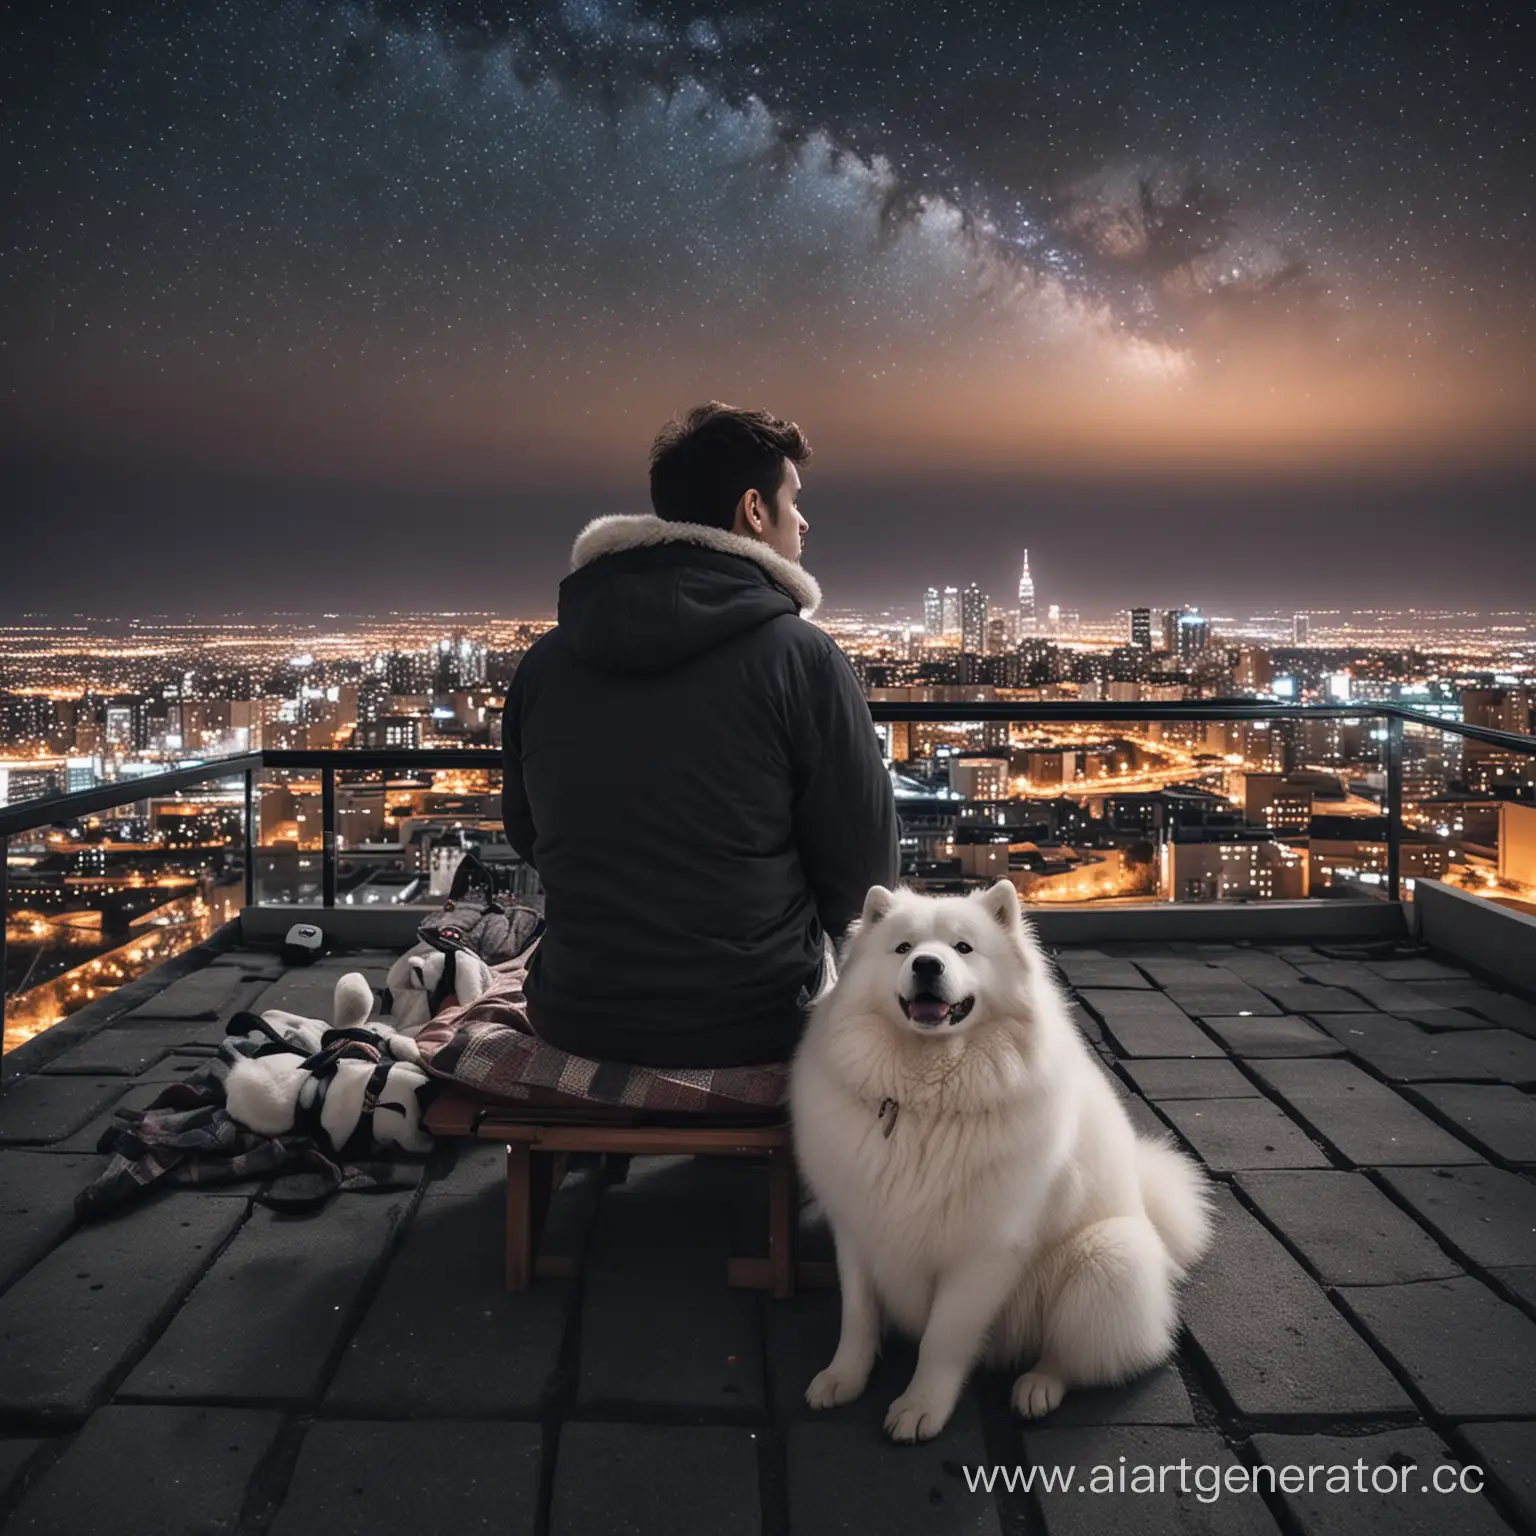 Парень, сидящий спиной на шезлонги на крыше жилого здания, и смотрит на звёздное небо, вокруг огни ночного города, и рядом с парнем лежит один пёс самоед. Лиц не видно